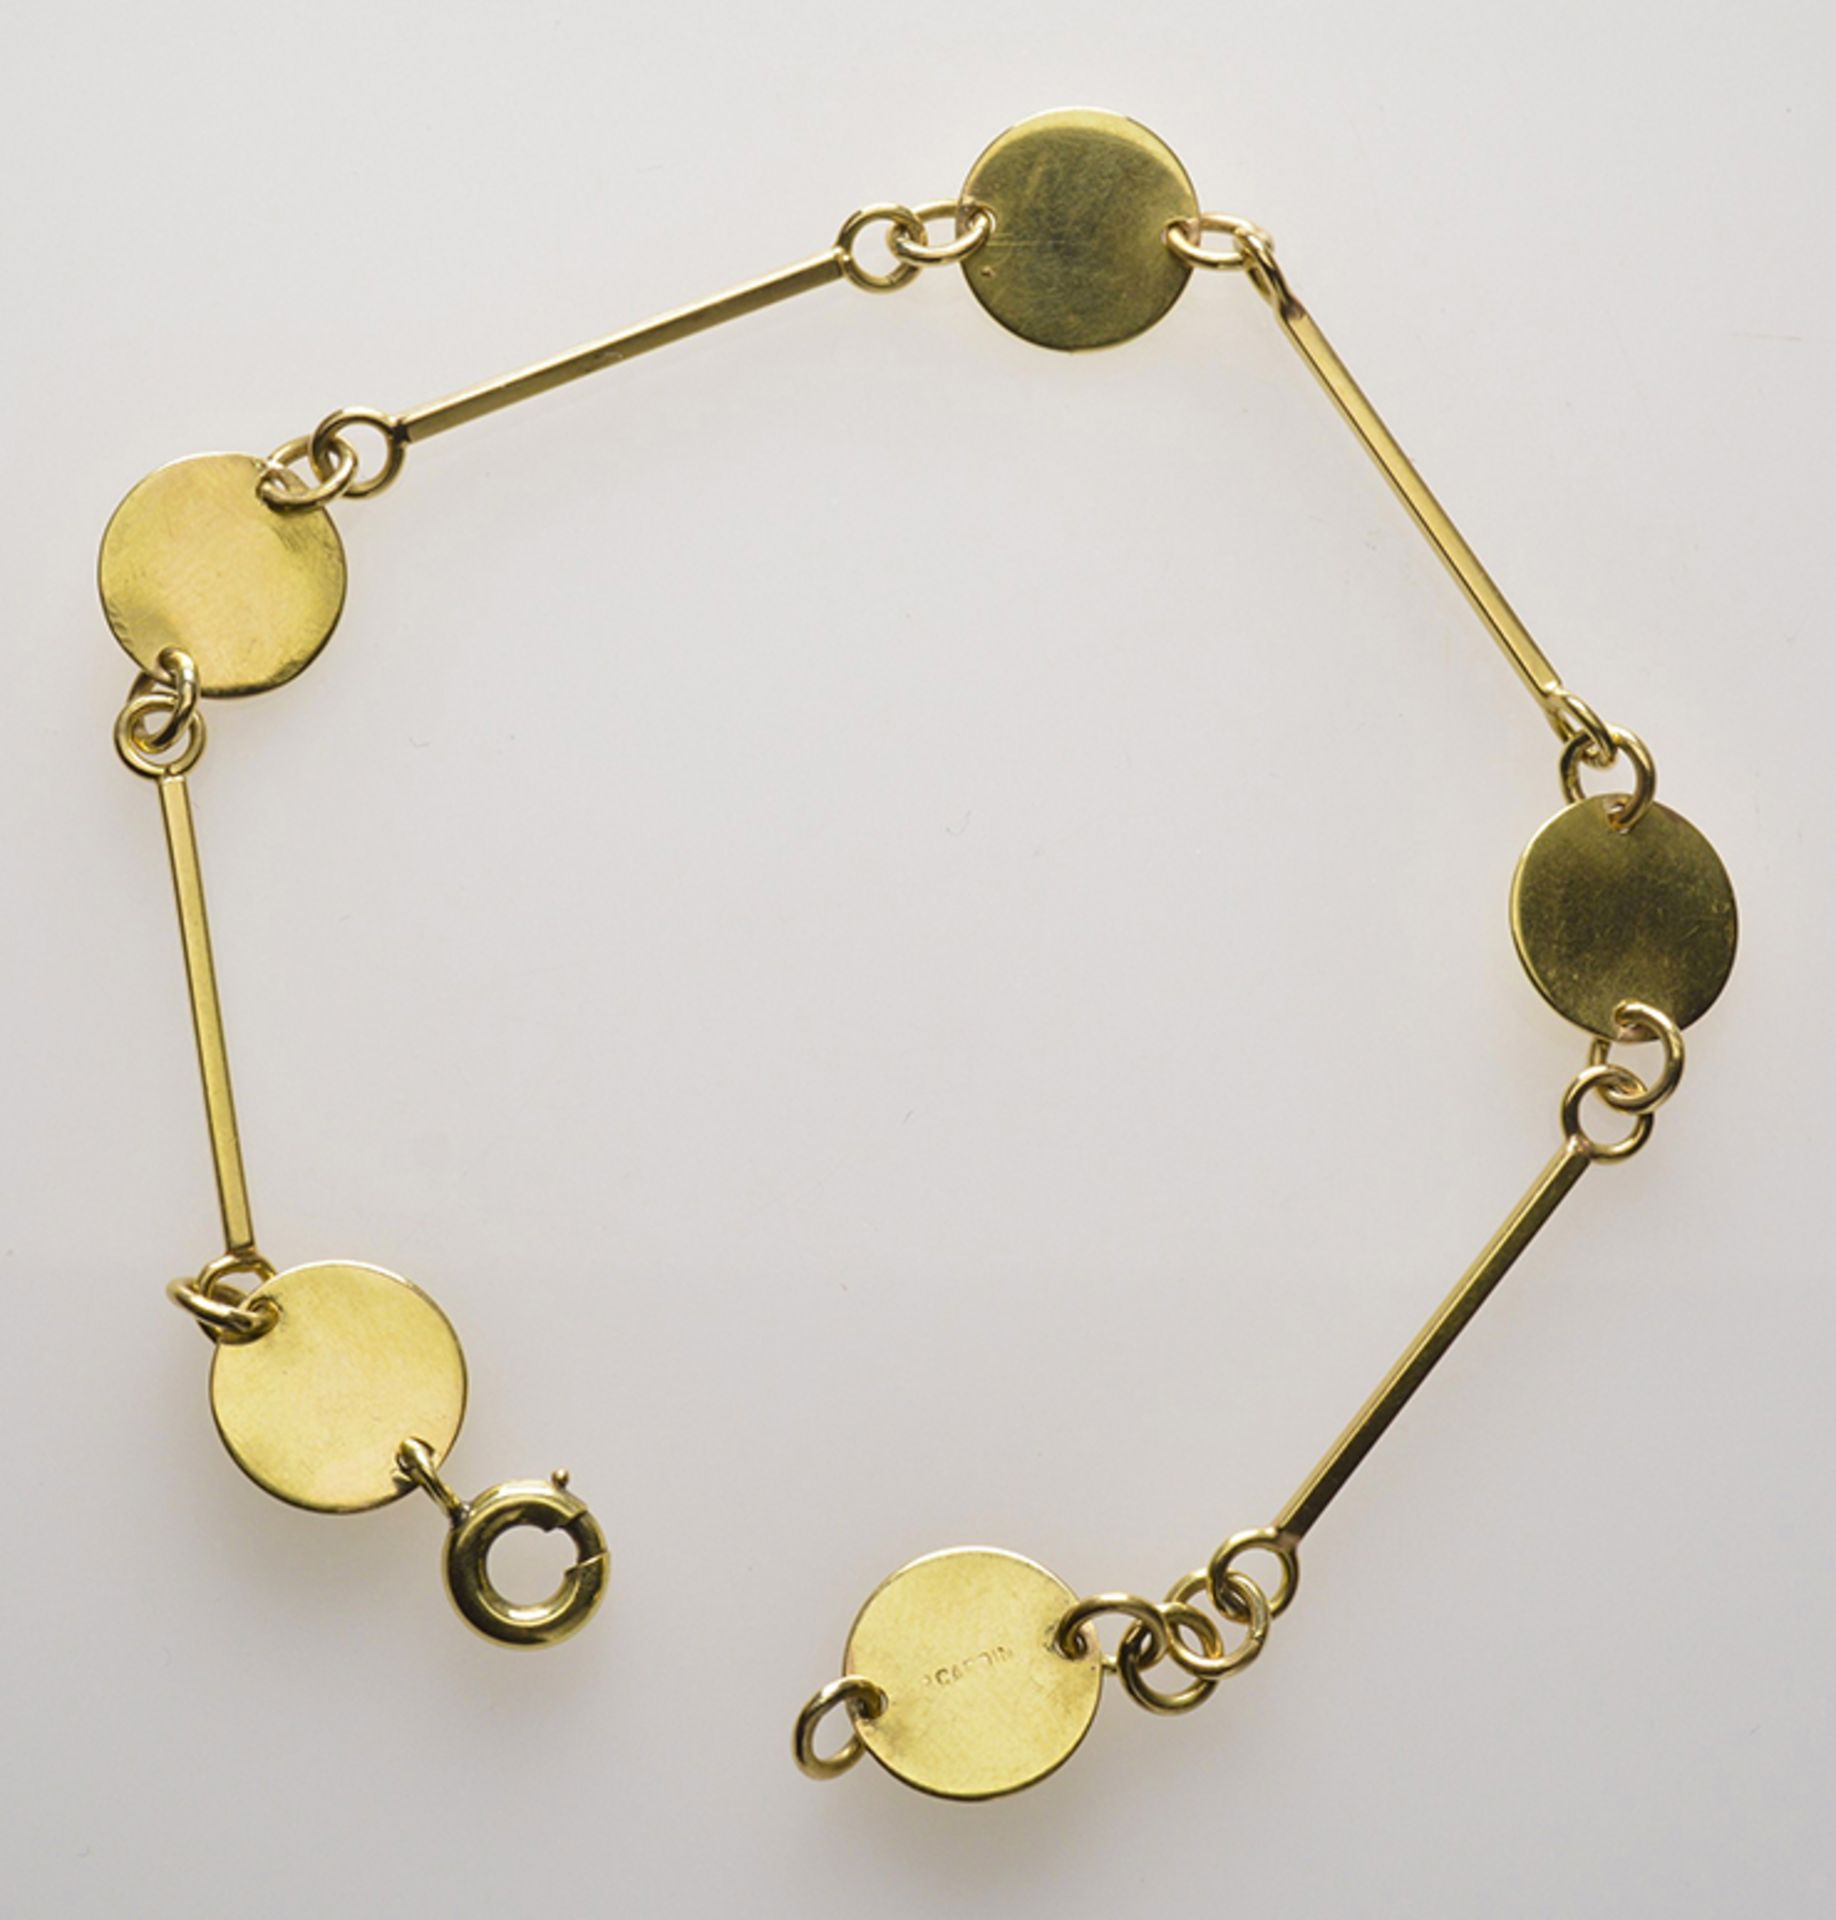 Bracelet 1960's period - Pierre Cardin. 18k gold, Weight: 7,5 grs -